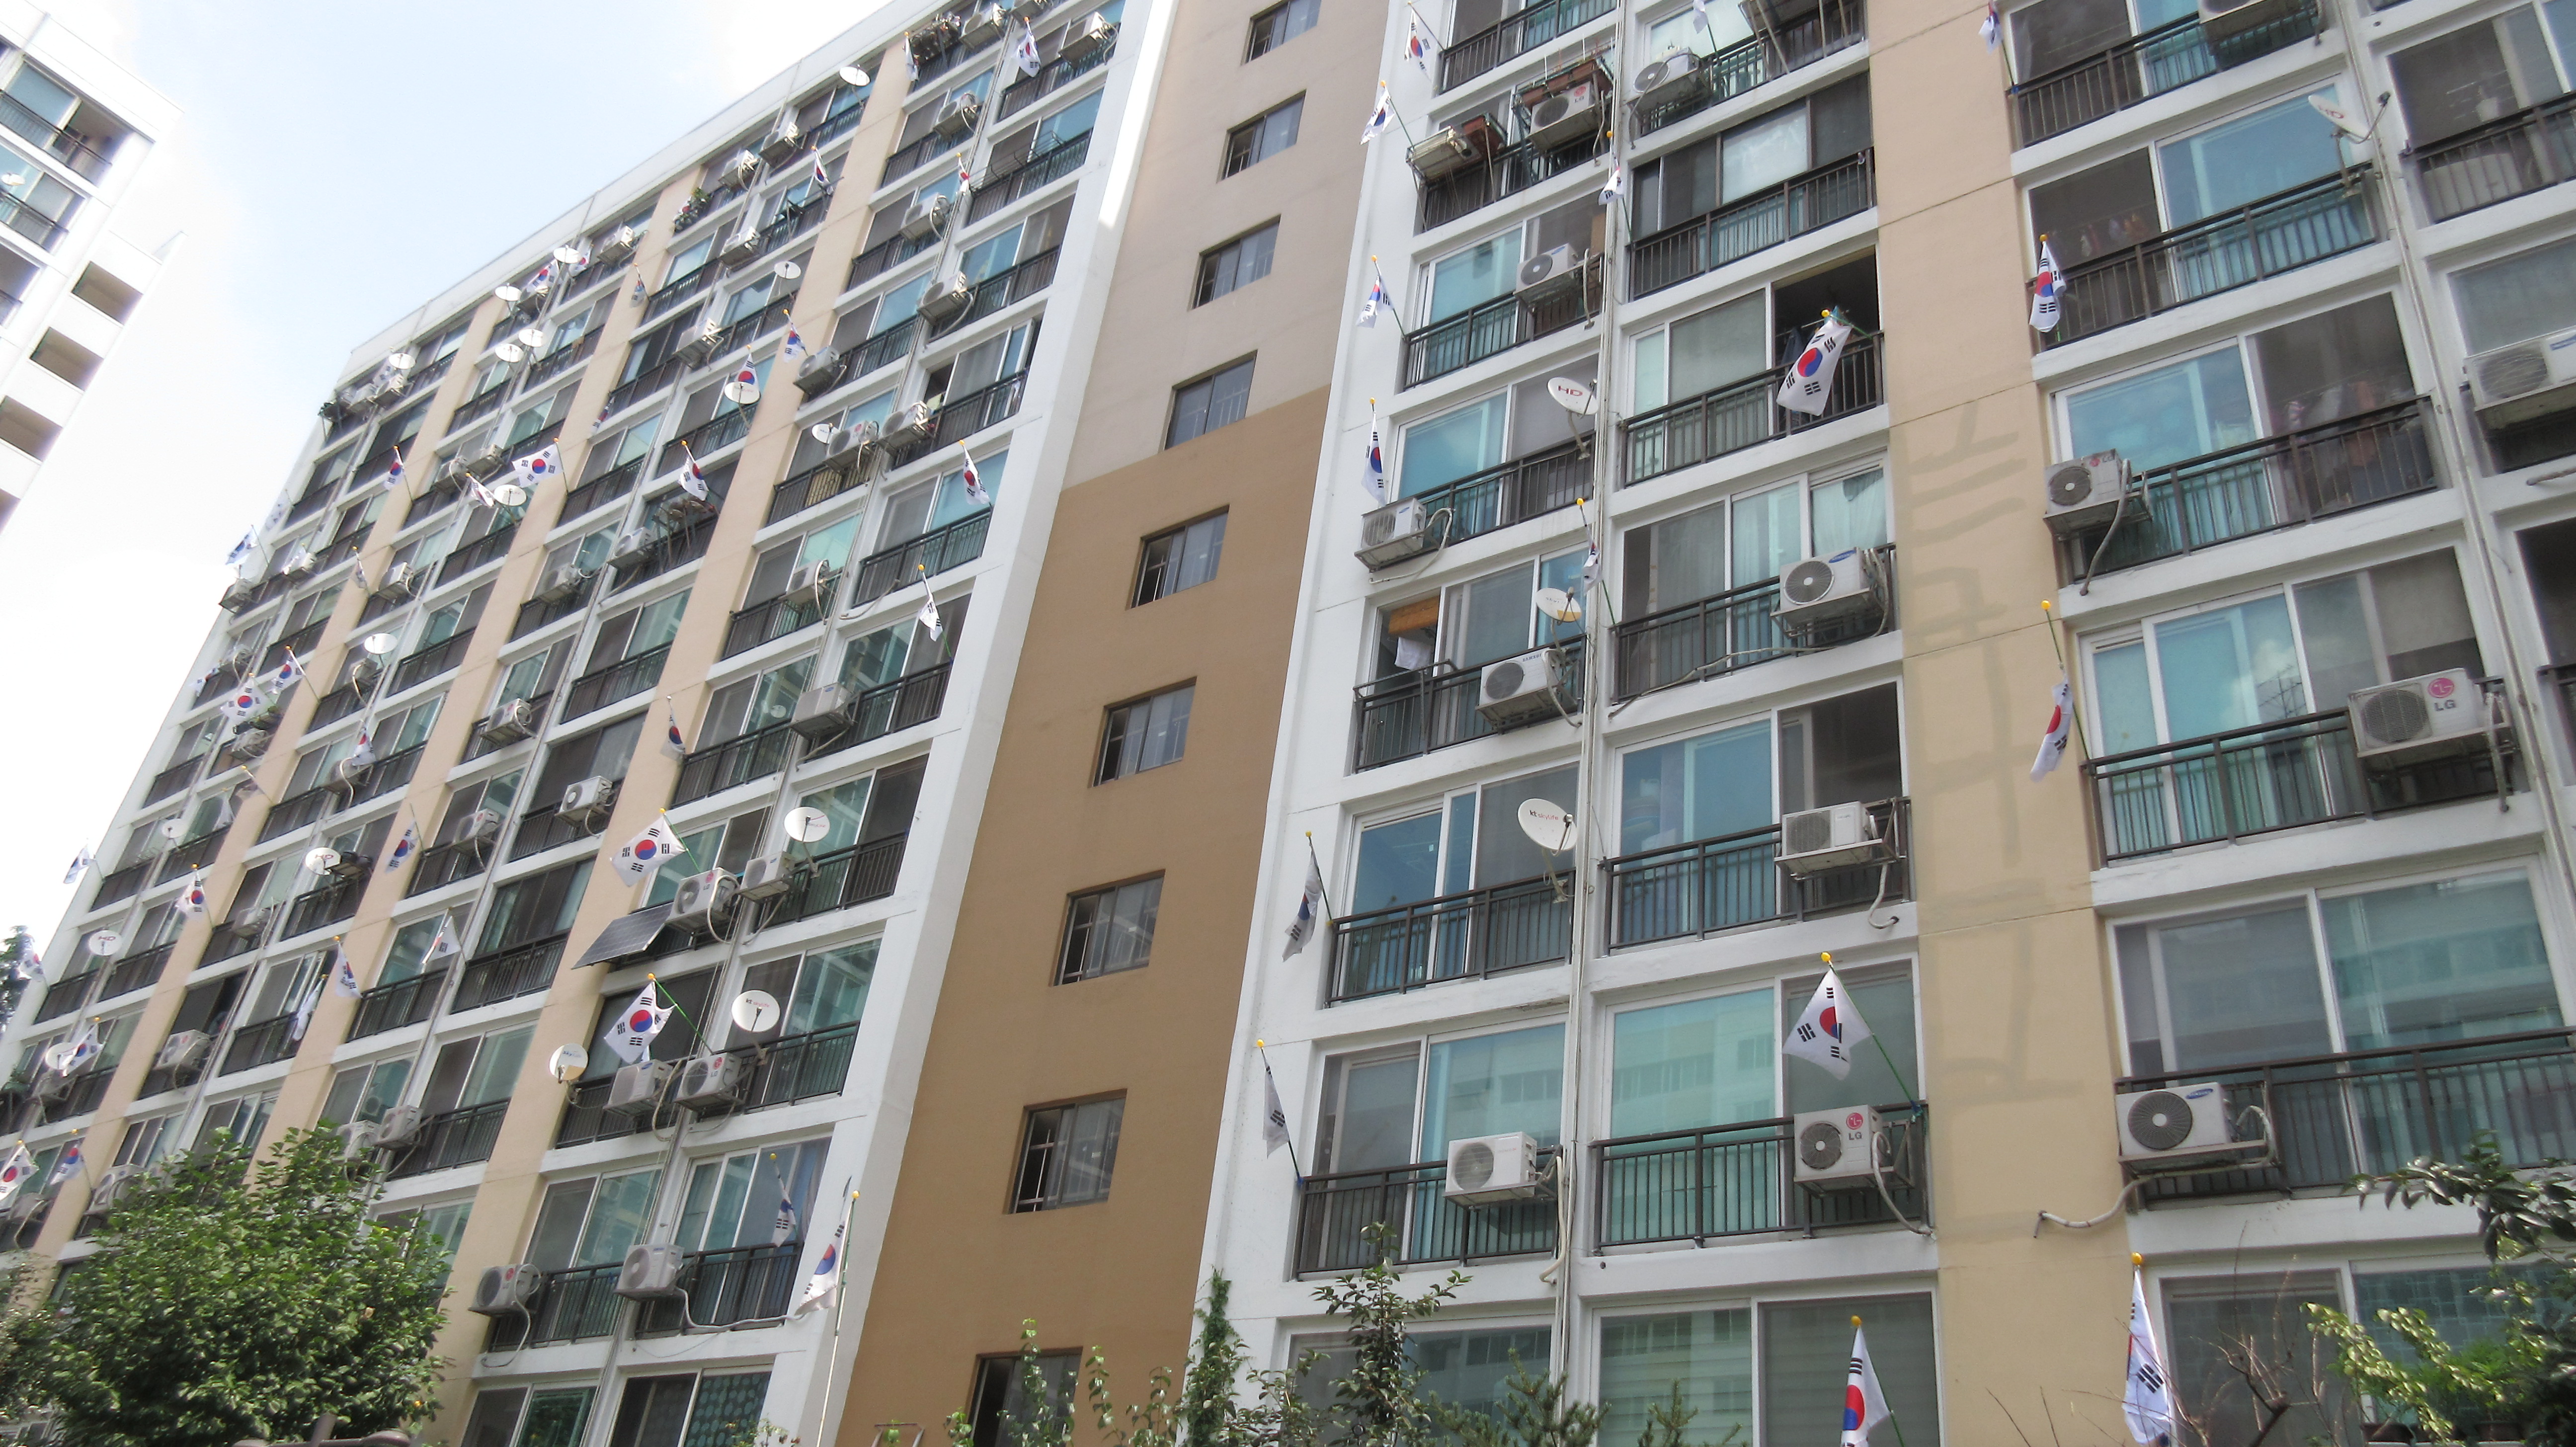 광복절인 지난 15일 서울 강남구 일원동의 한 아파트 단지에 집집마다 태극기가 걸려 있다. 강남구 제공